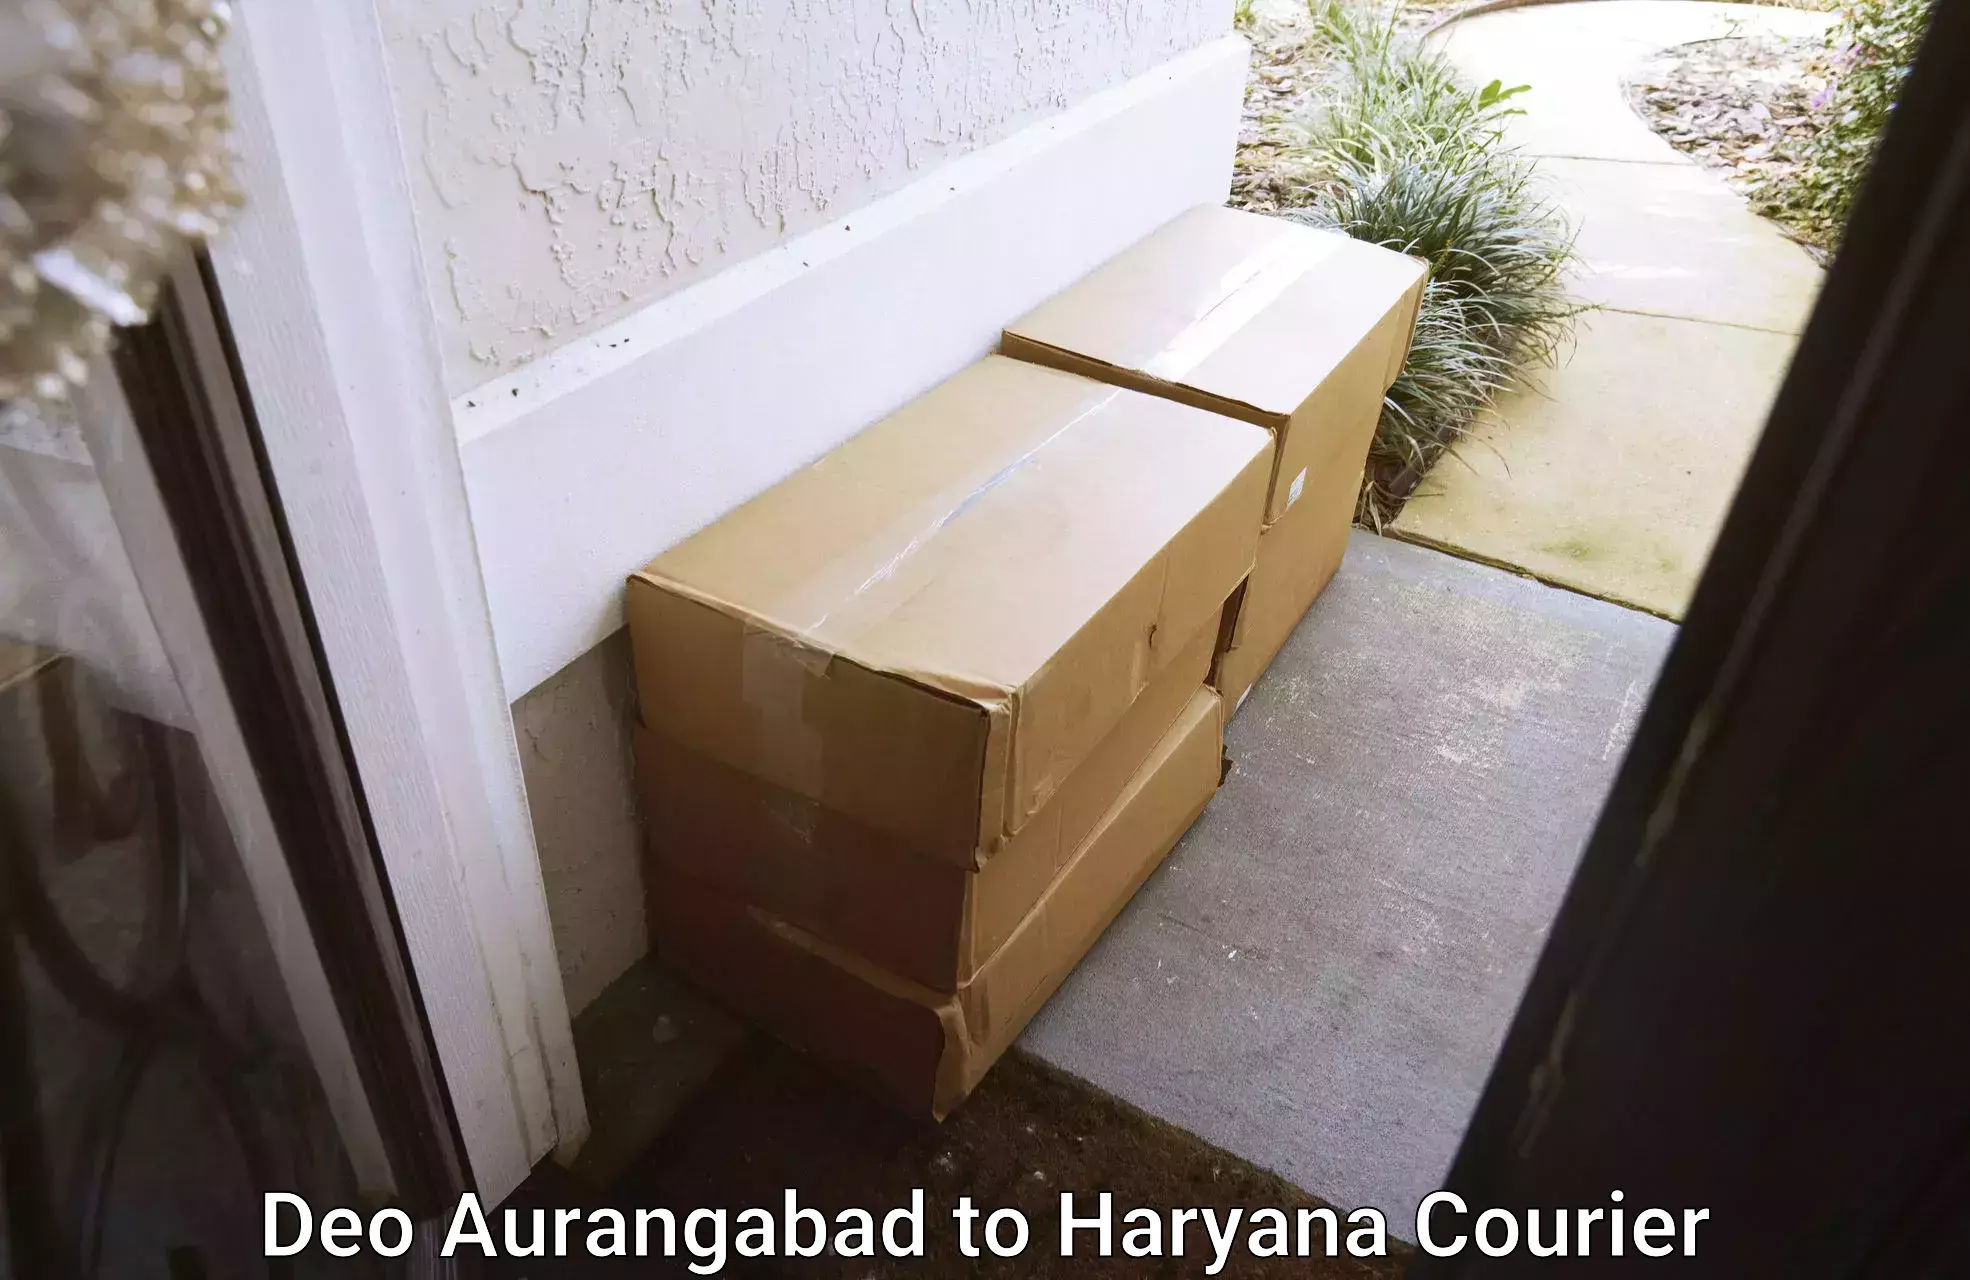 Furniture moving experts Deo Aurangabad to Dharuhera